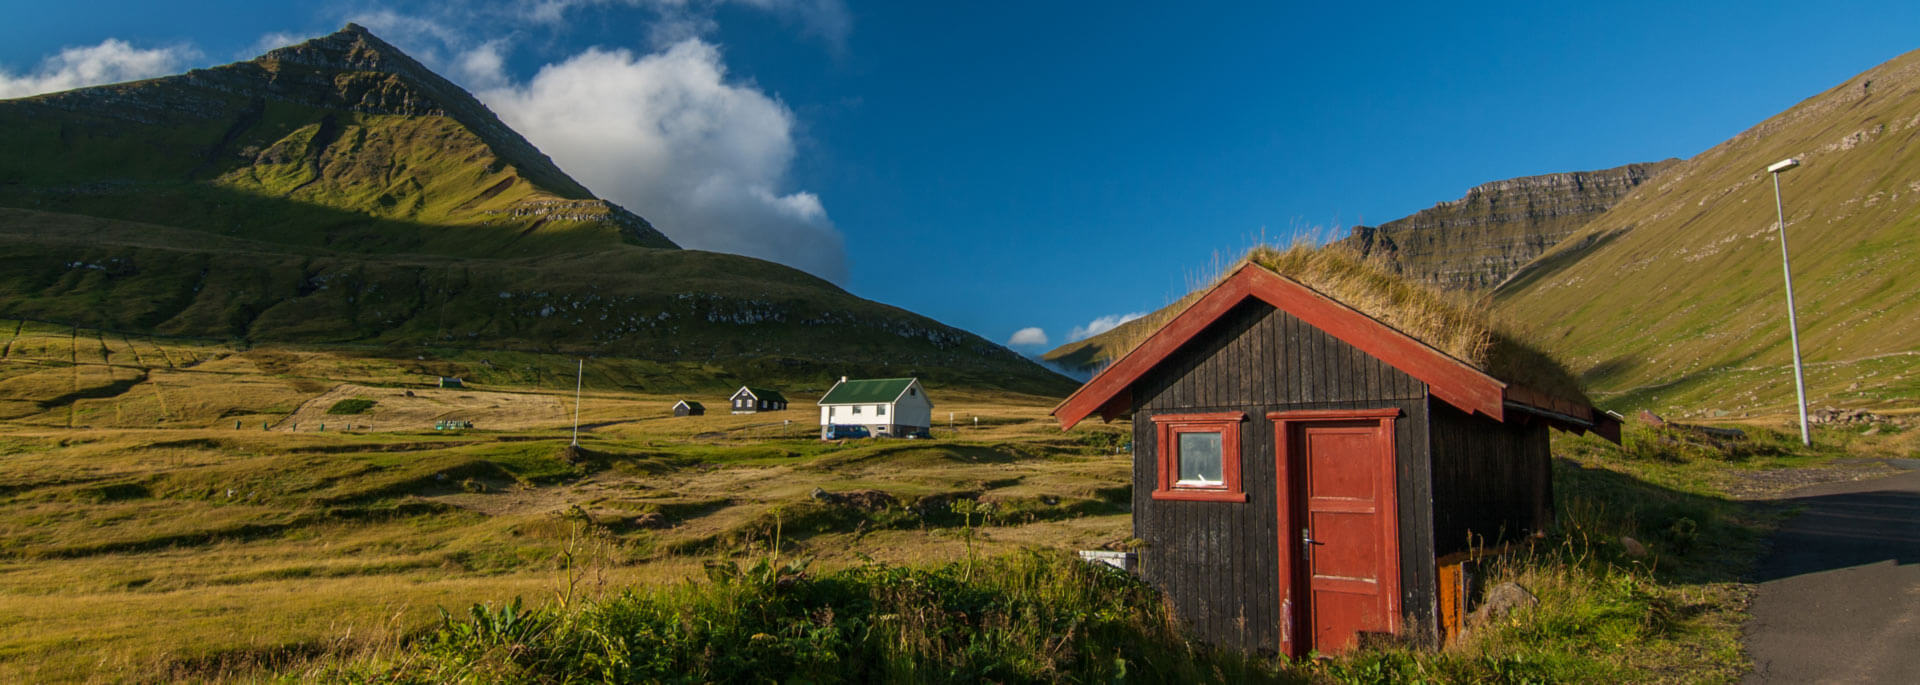 Fotos: Färöer Inseln in Sonne und Wolken